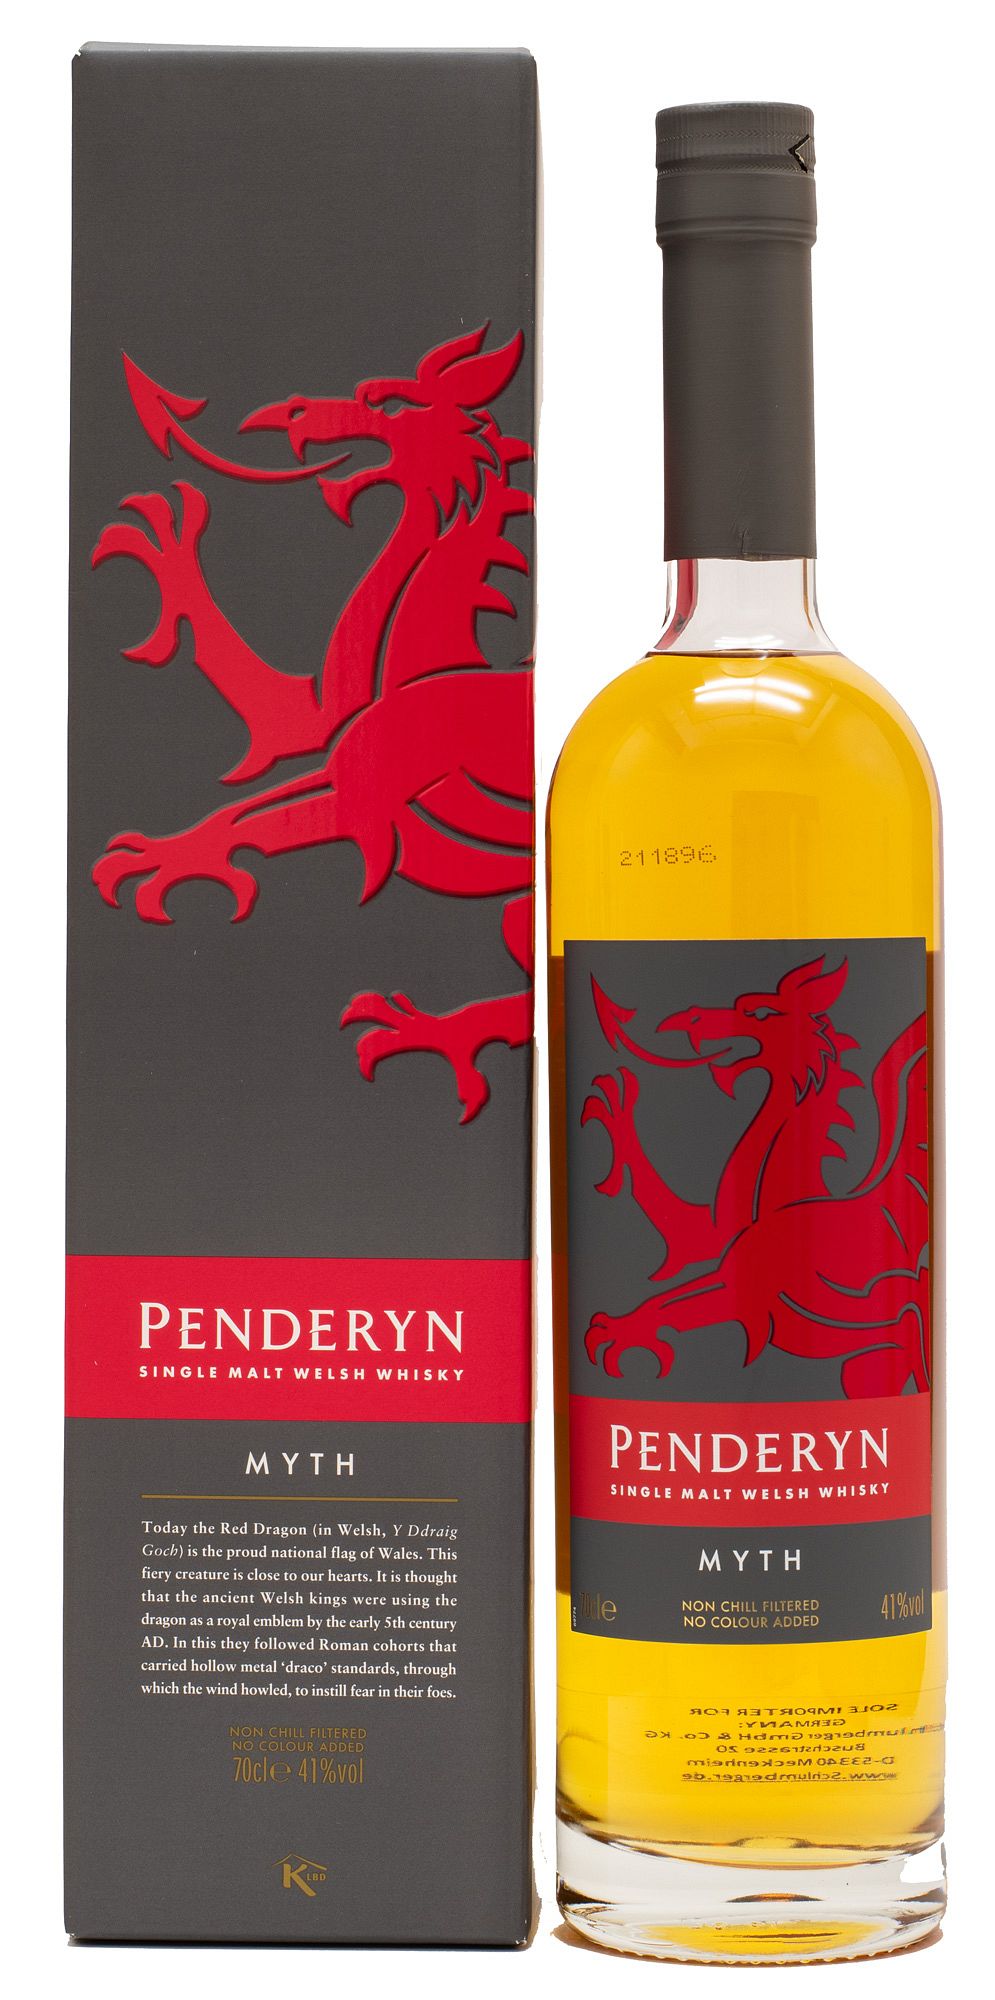 Penderyn Myth Wales Single Malt Whisky 41% vol 0,7 L | Angebote | Whiskygraf